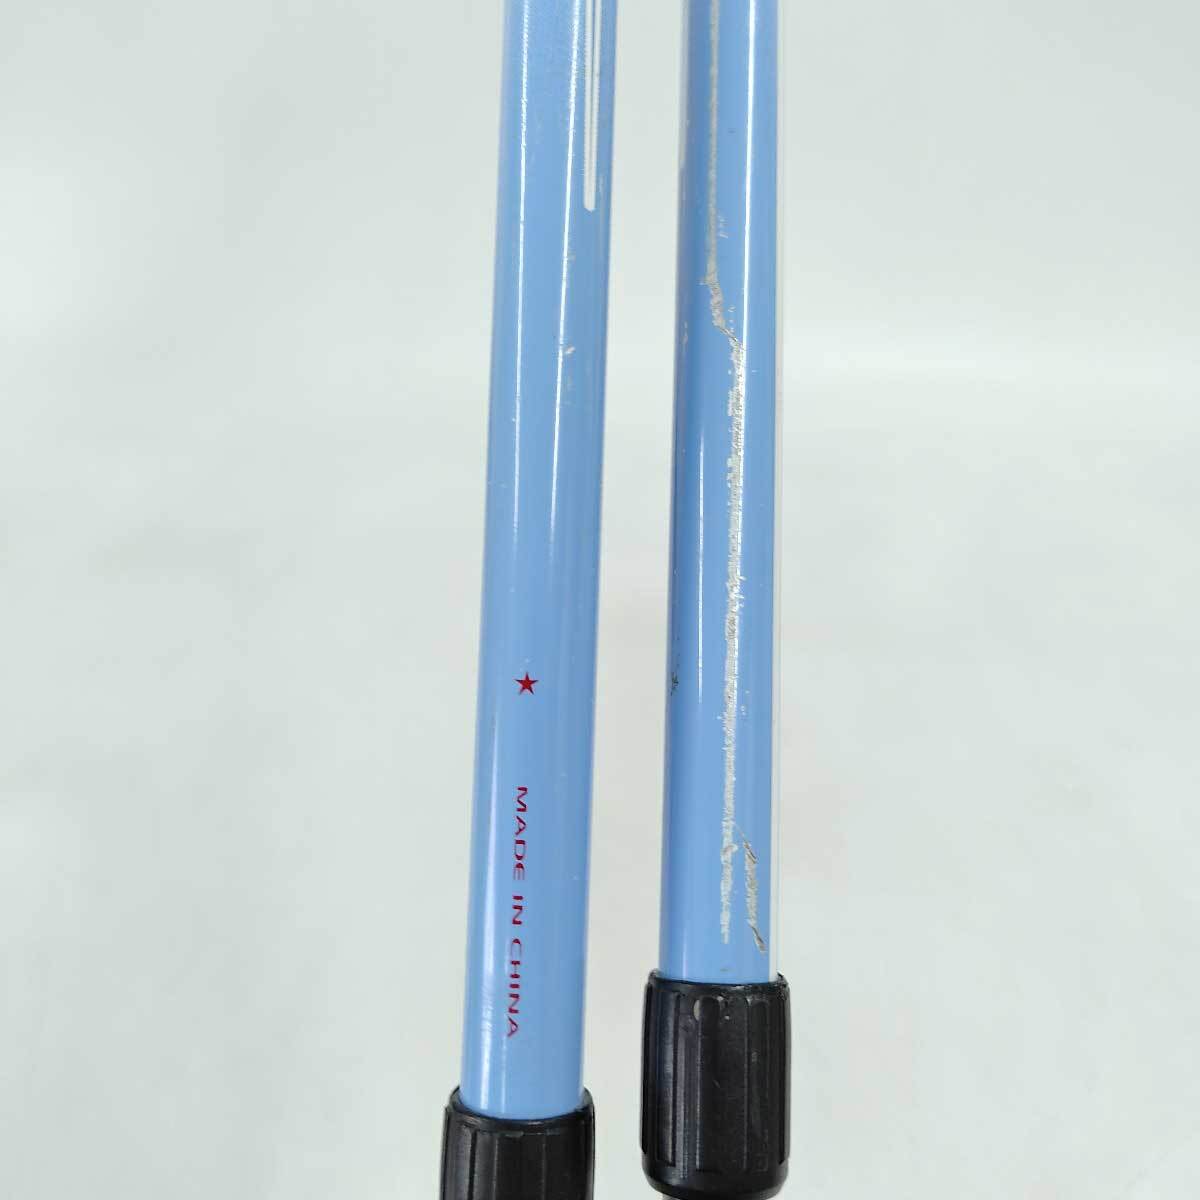 [ used ]Hart paul (pole) stock VISAGE TEAM SIZE ADJUSTABLE DIAMETER 14mm+12mm